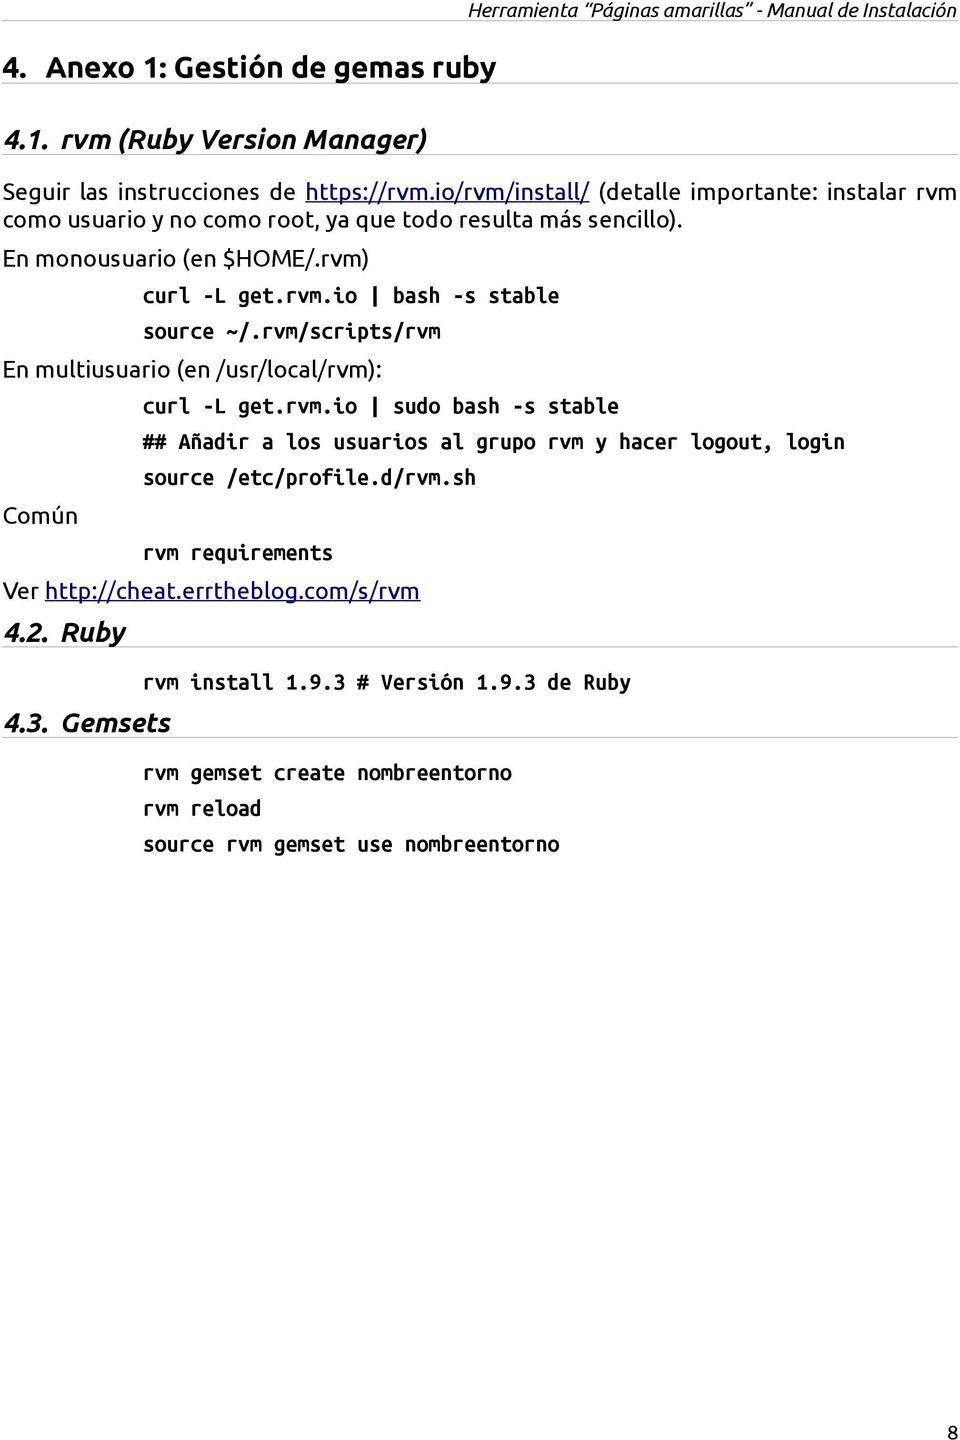 rvm/scripts/rvm En multiusuario (en /usr/local/rvm): Común curl -L get.rvm.io sudo bash -s stable ## Añadir a los usuarios al grupo rvm y hacer logout, login source /etc/profile.d/rvm.